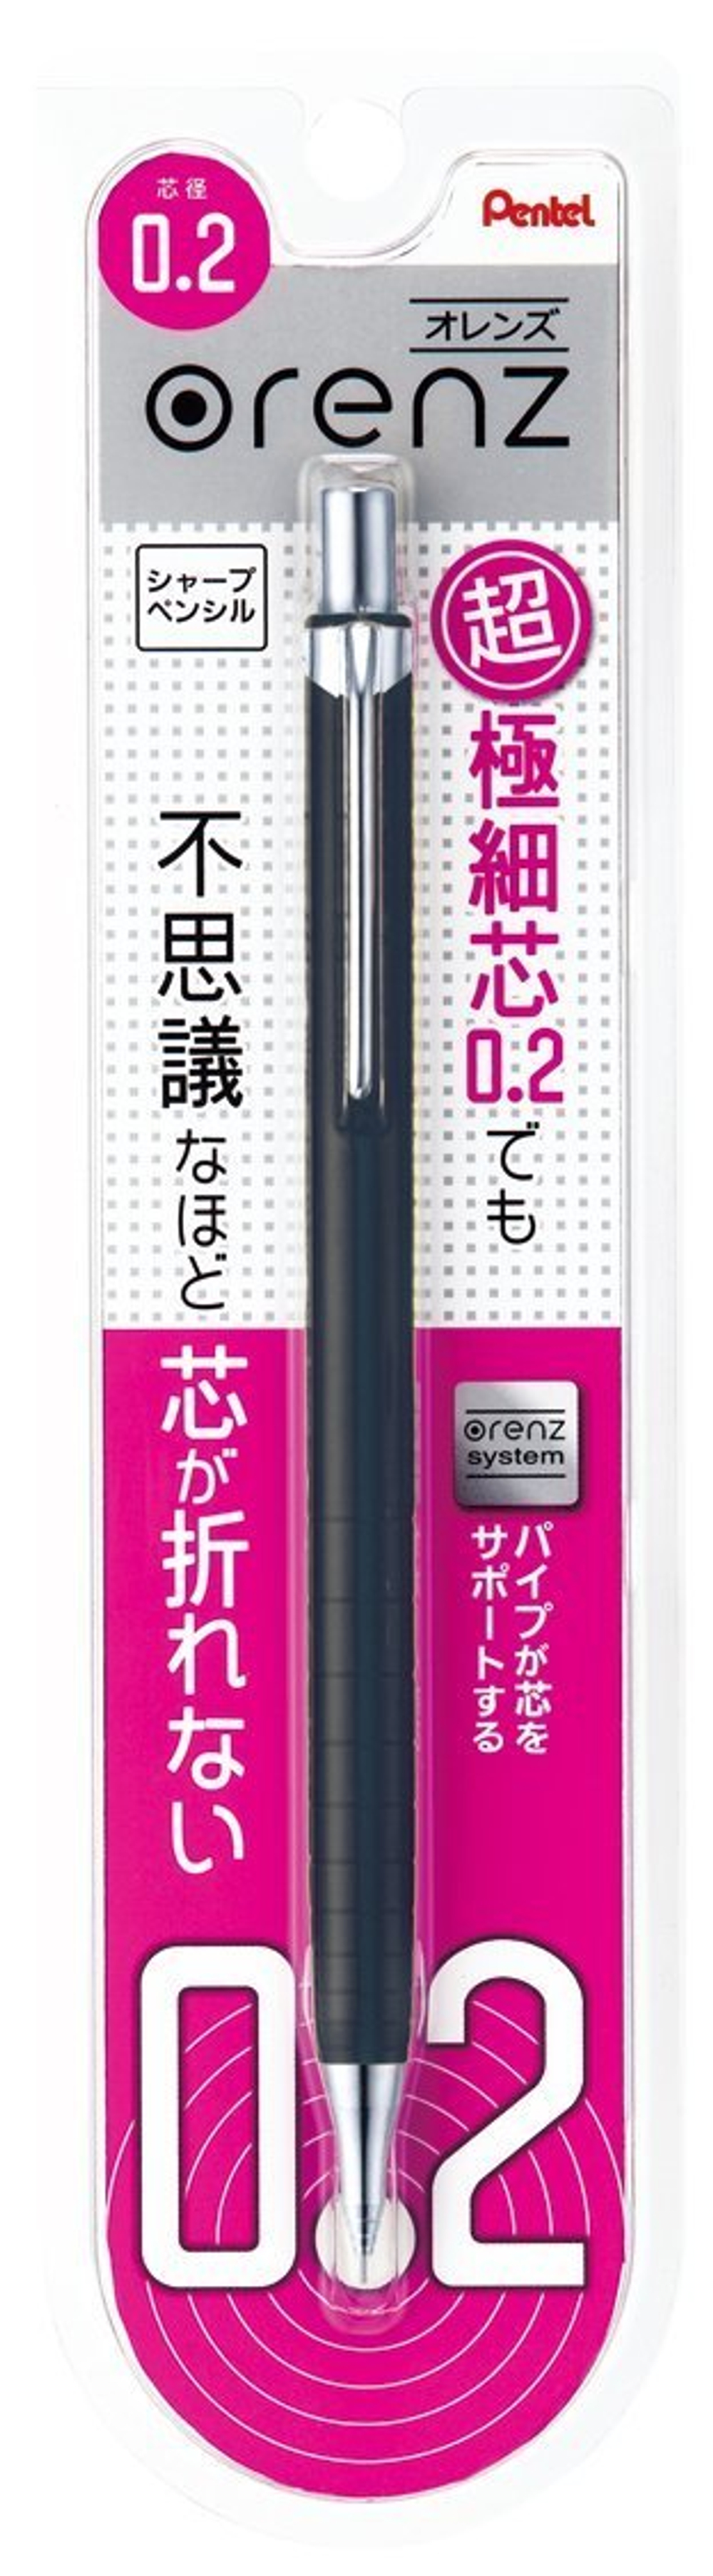 Pentel Orenz XPP502 - самые тонкопишущие механические карандаши в мире. Диаметр грифеля 0,2 мм. Купить в pen24.ru